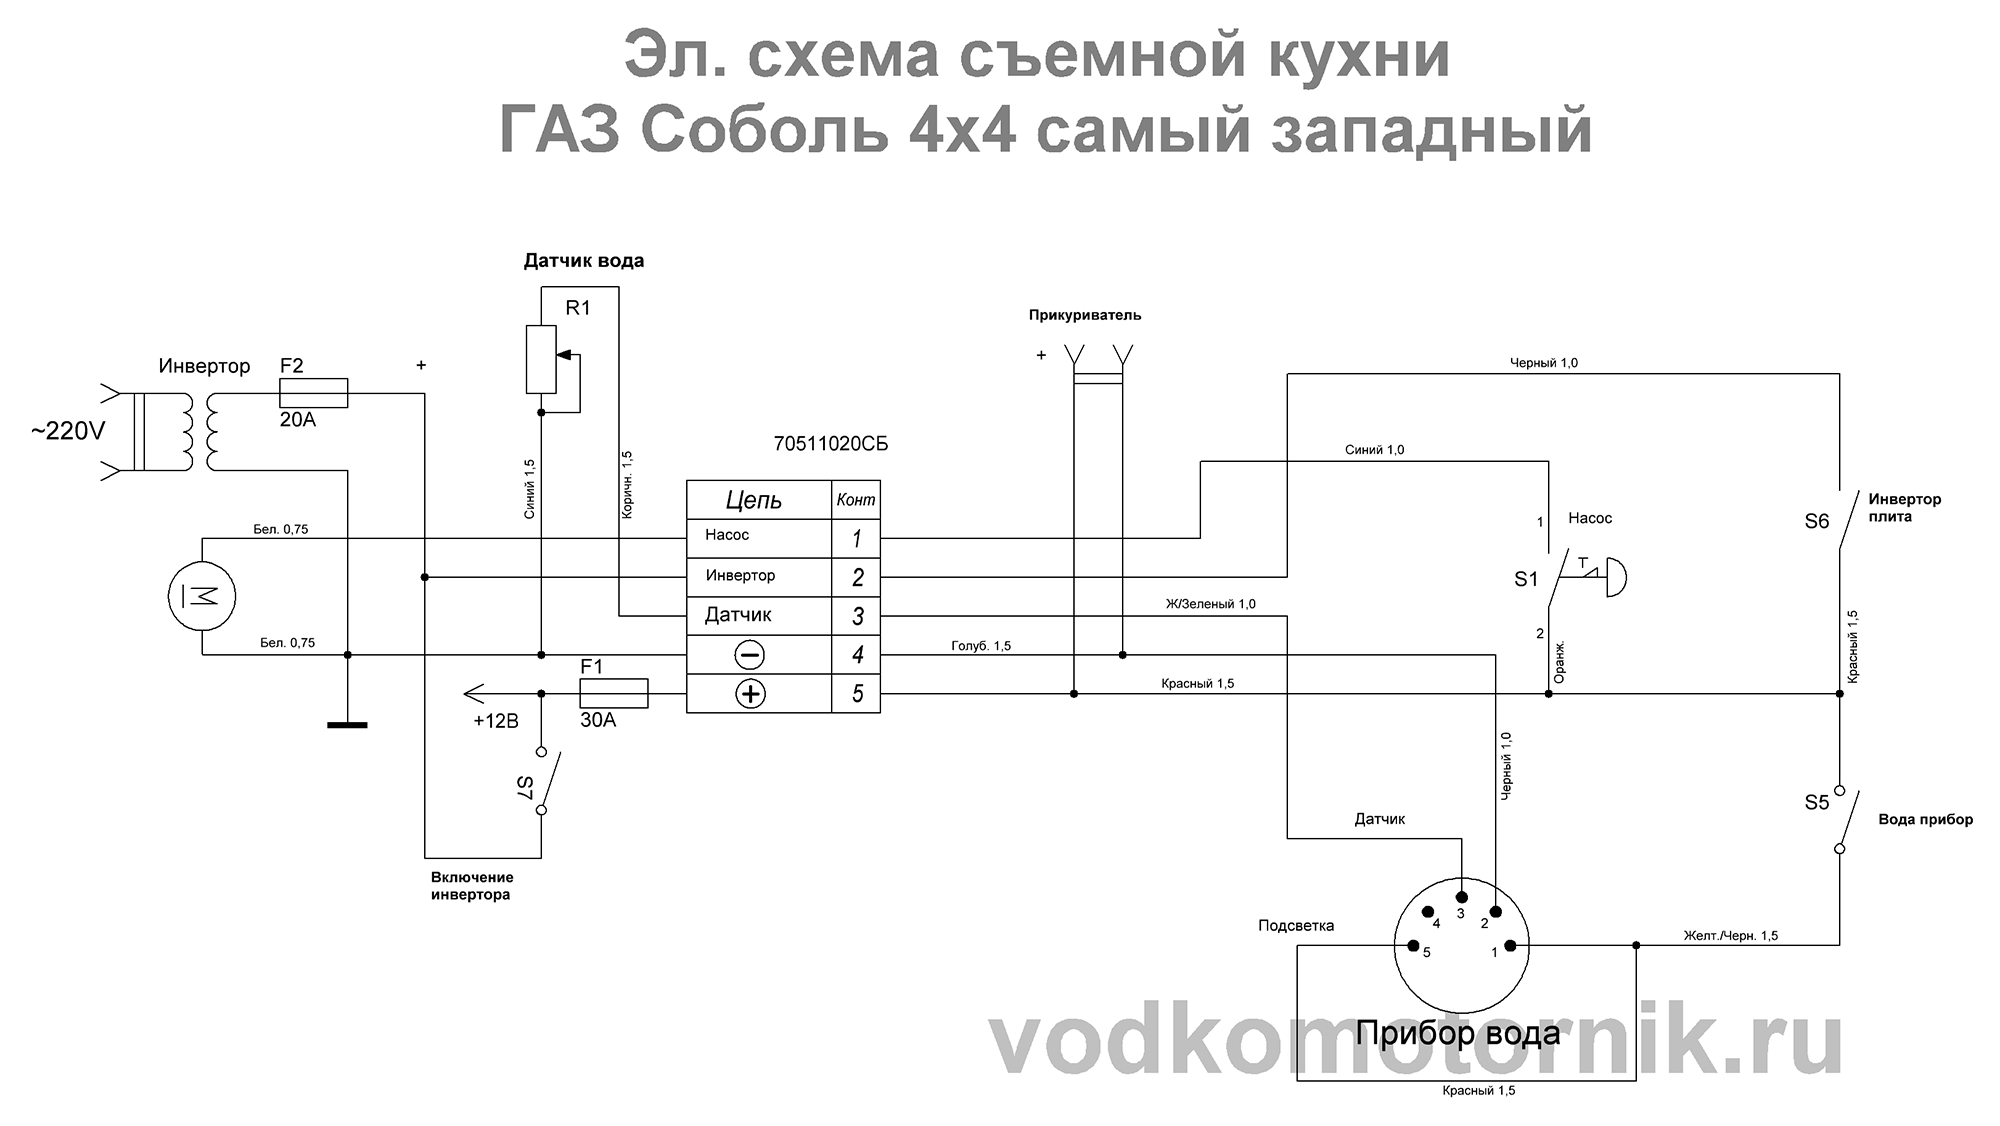 Электрическая схема съемной кухни ГАЗ Соболь 4х4 самый западный